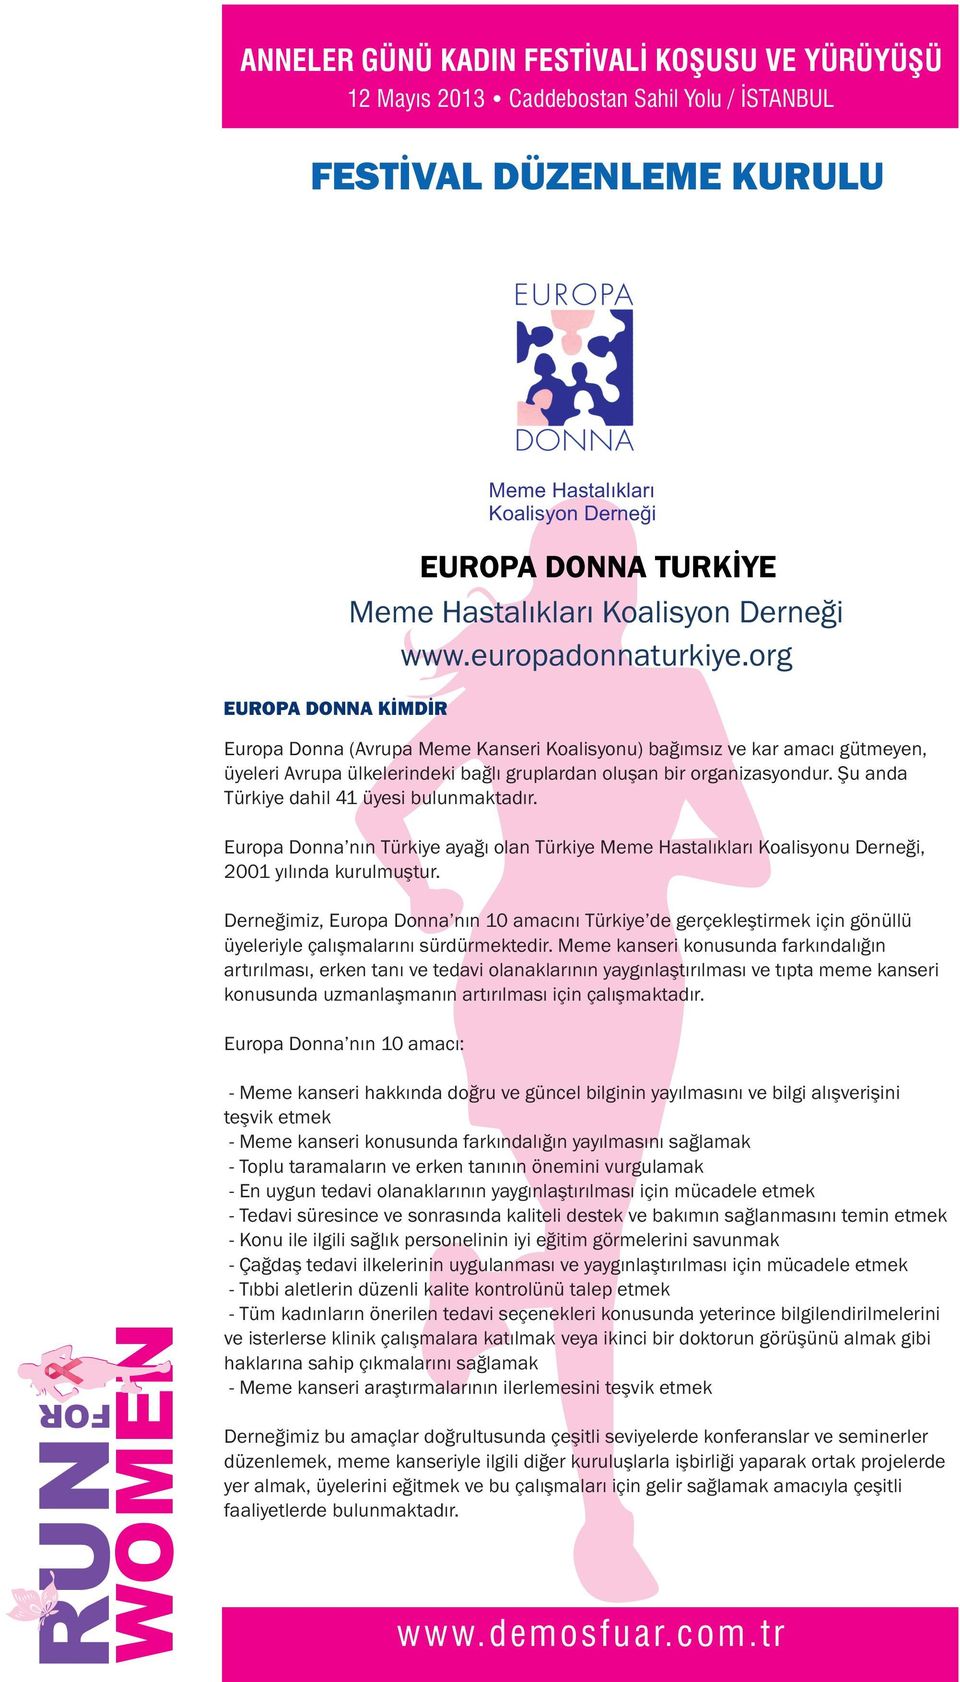 Türkiye Meme Hastalıkları Koalisyonu Derneği, 2001 yılında kurulmuştur Derneğimiz, Europa Donna nın 10 amacını Türkiye de gerçekleştirmek için gönüllü üyeleriyle çalışmalarını sürdürmektedir Meme